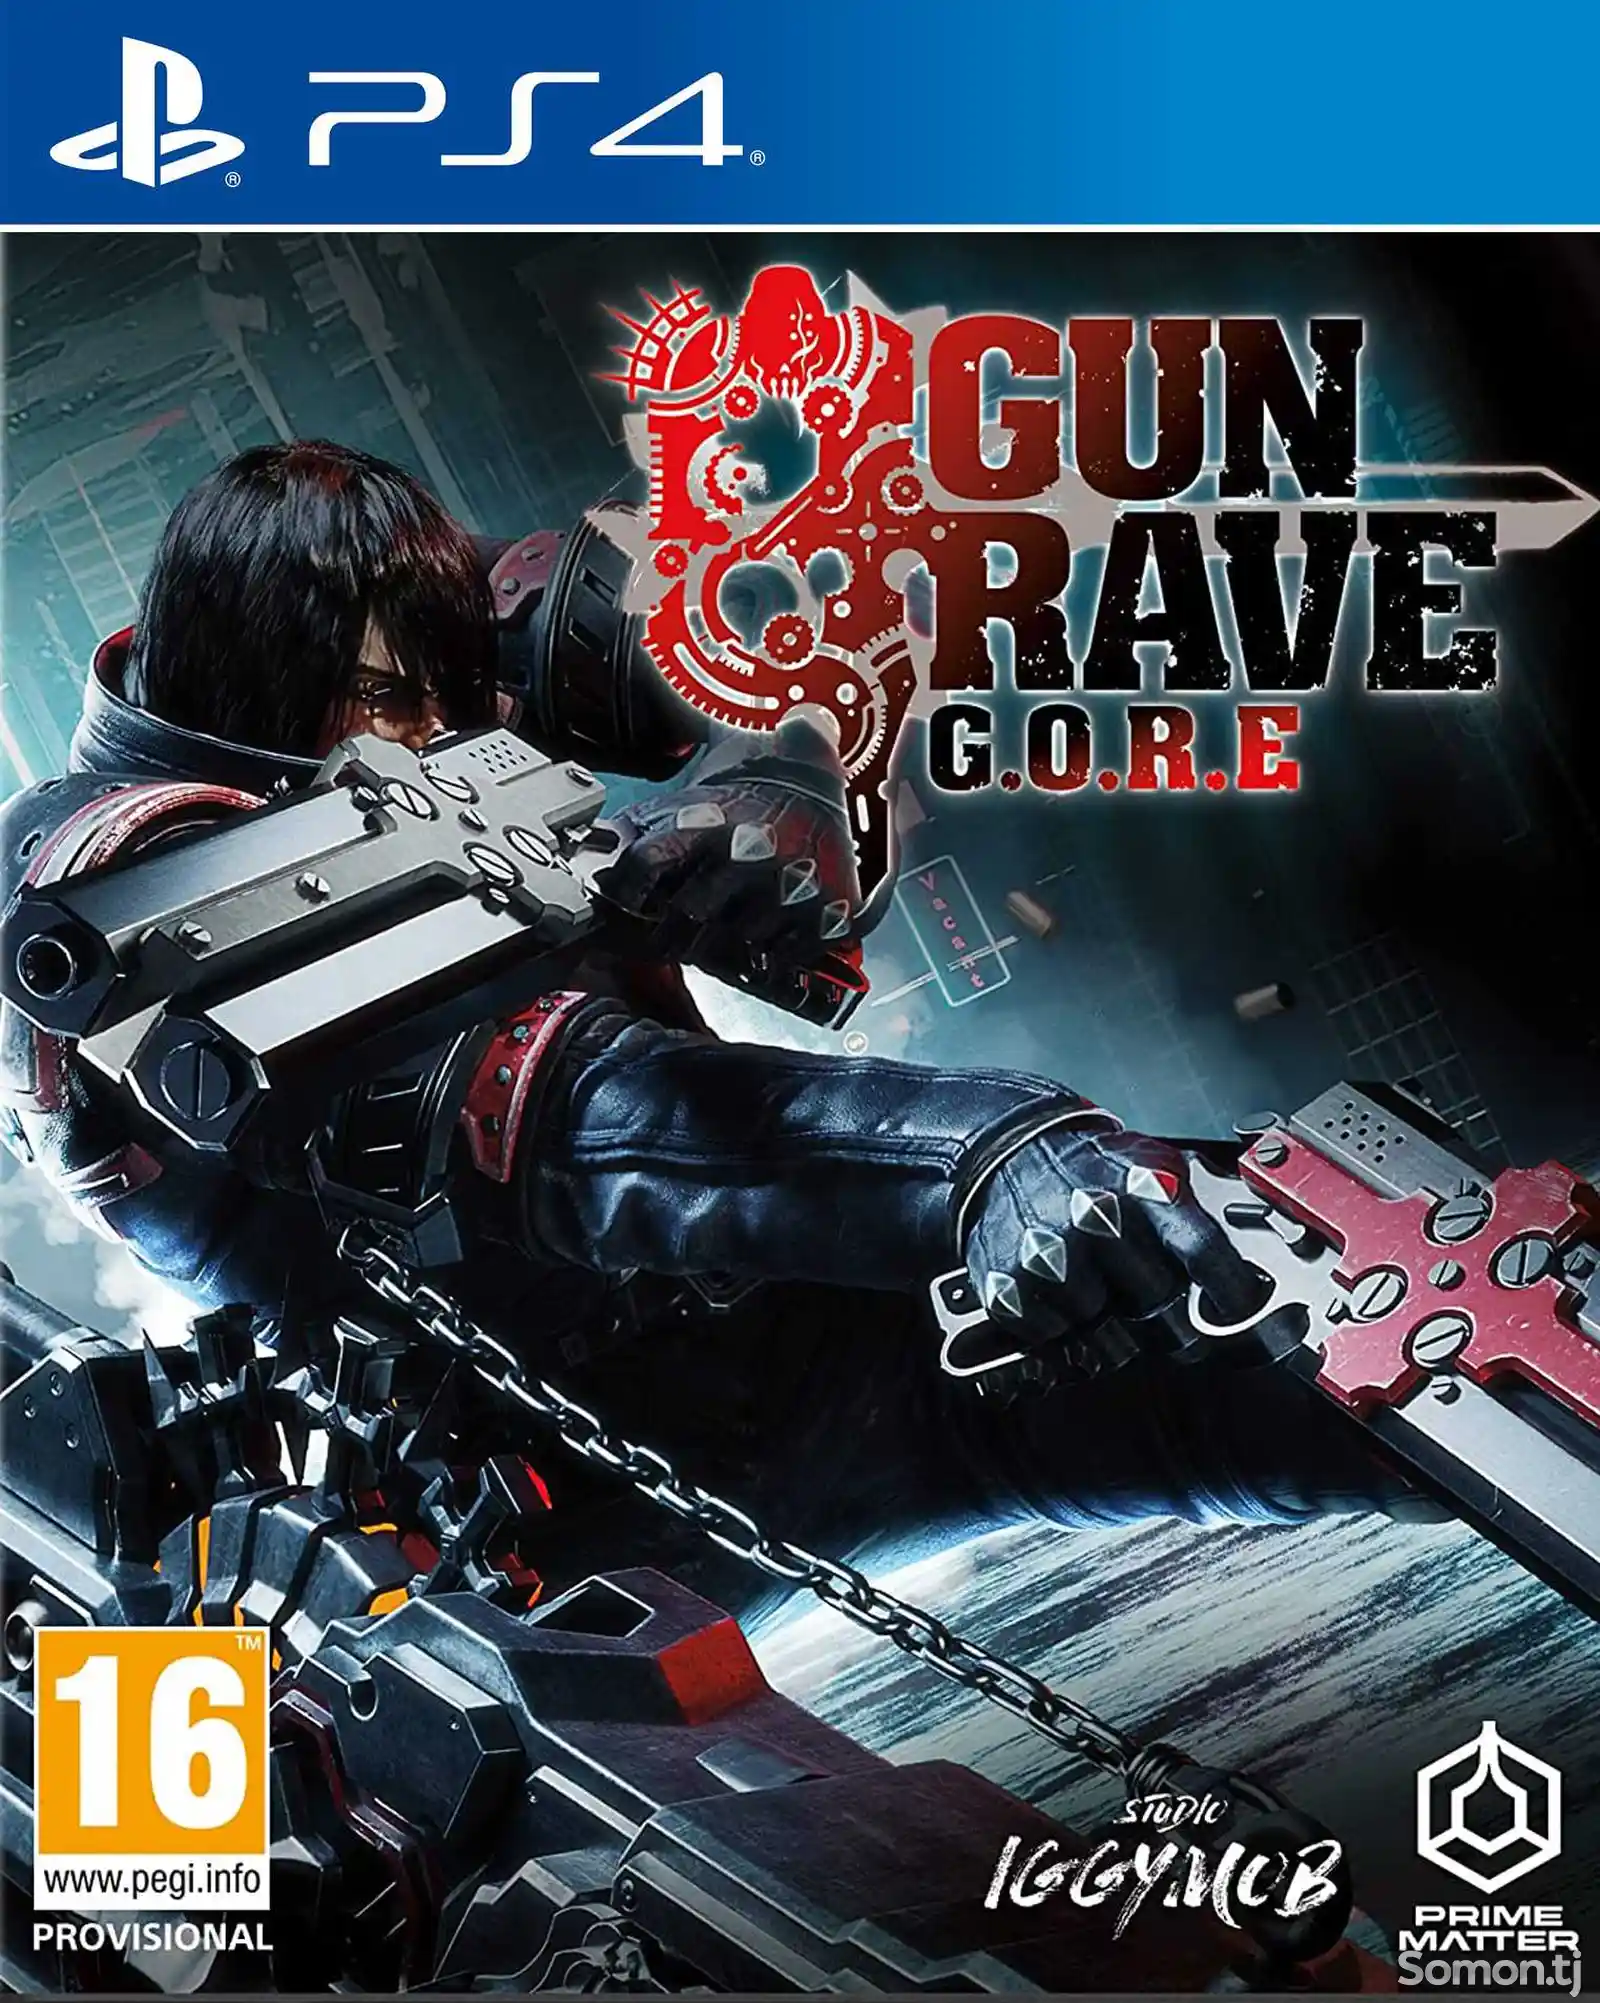 Игра Gungrave G.O.R.E для PS-4 / 5.05 / 6.72 / 7.02 / 7.55 / 9.00 /-1